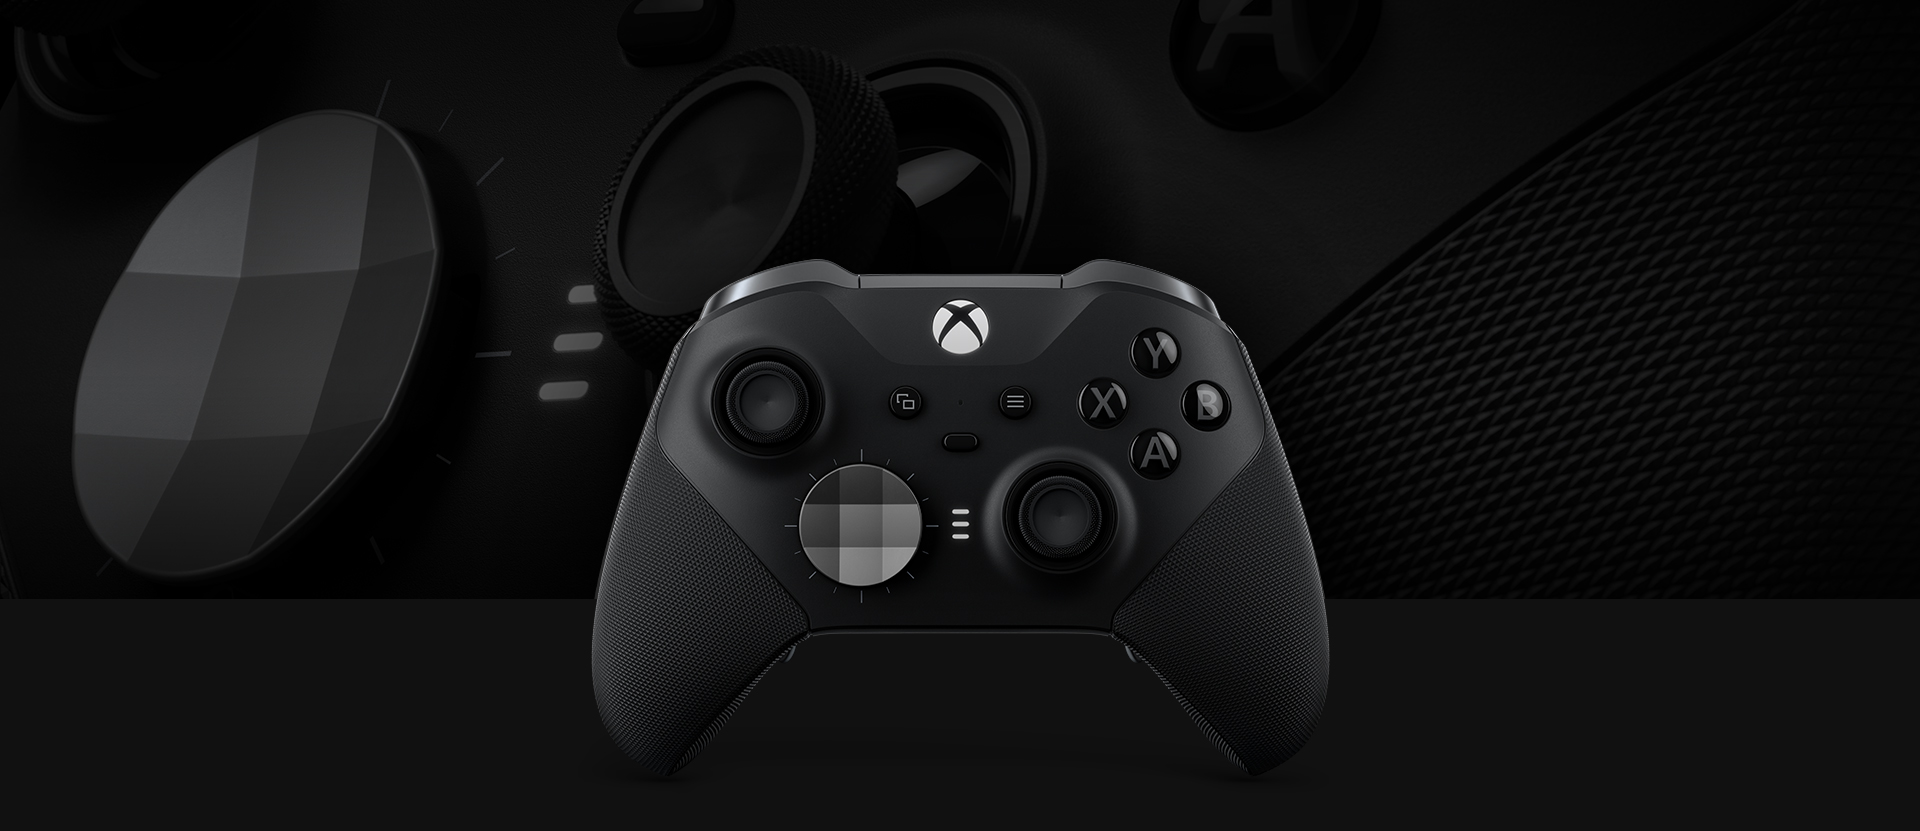 Originální a značně vylepšený gamepad Xbox Wireless Controller Elite Series 2 byl navržený ve spolupráci s předními profesionálními hráči světové úrovně.